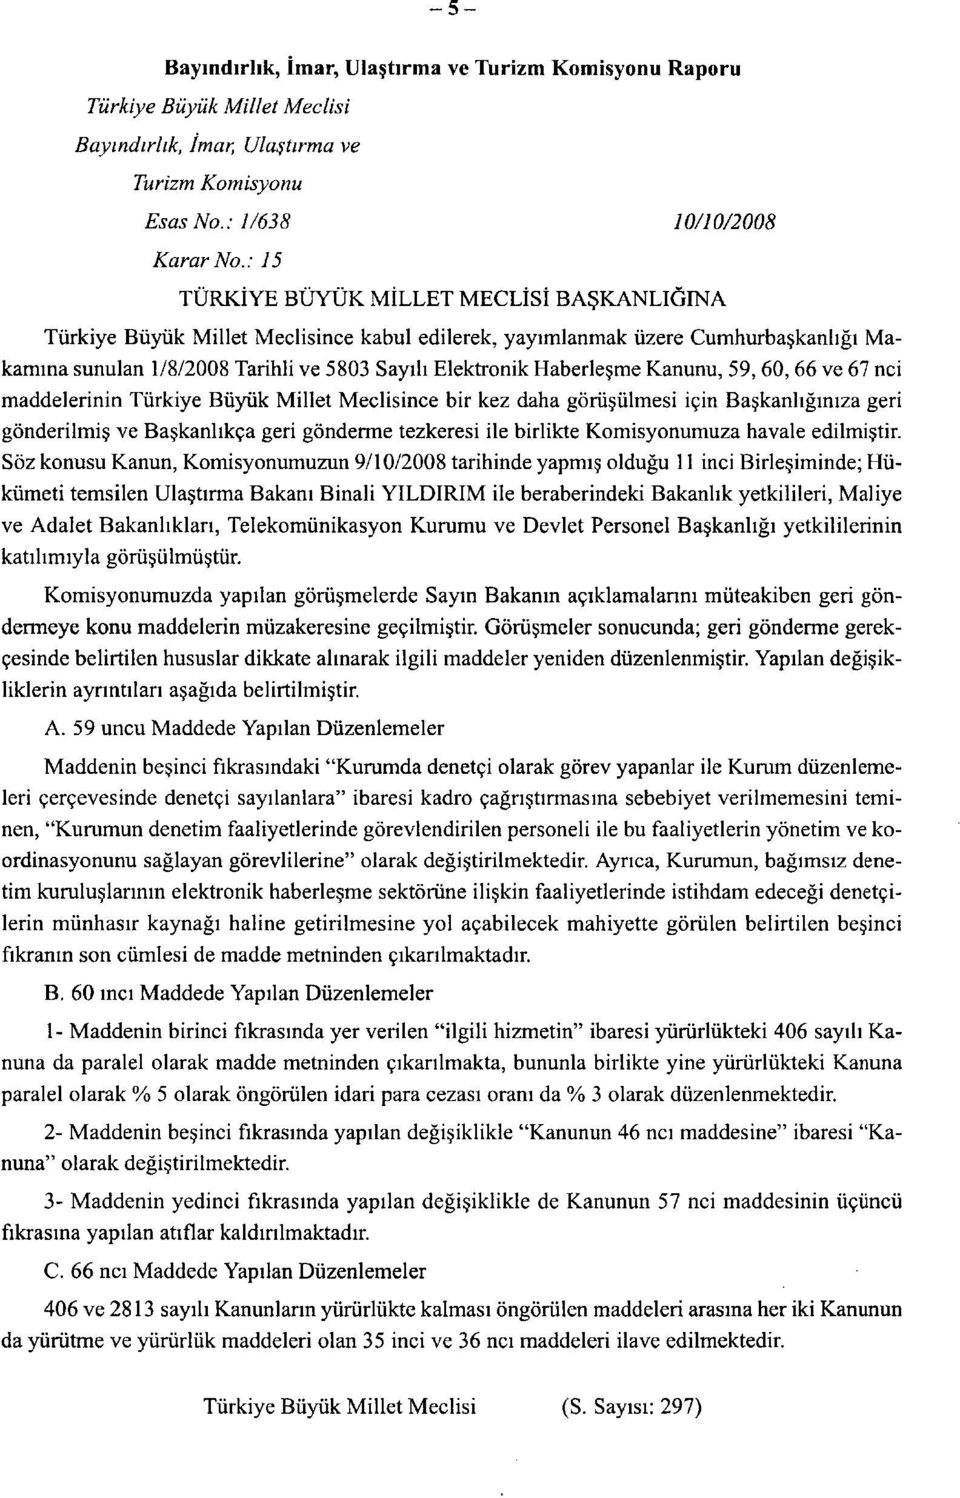 Haberleşme Kanunu, 59,60,66 ve 67 nci maddelerinin Türkiye Büyük Millet Meclisince bir kez daha görüşülmesi için Başkanlığınıza geri gönderilmiş ve Başkanlıkça geri gönderme tezkeresi ile birlikte